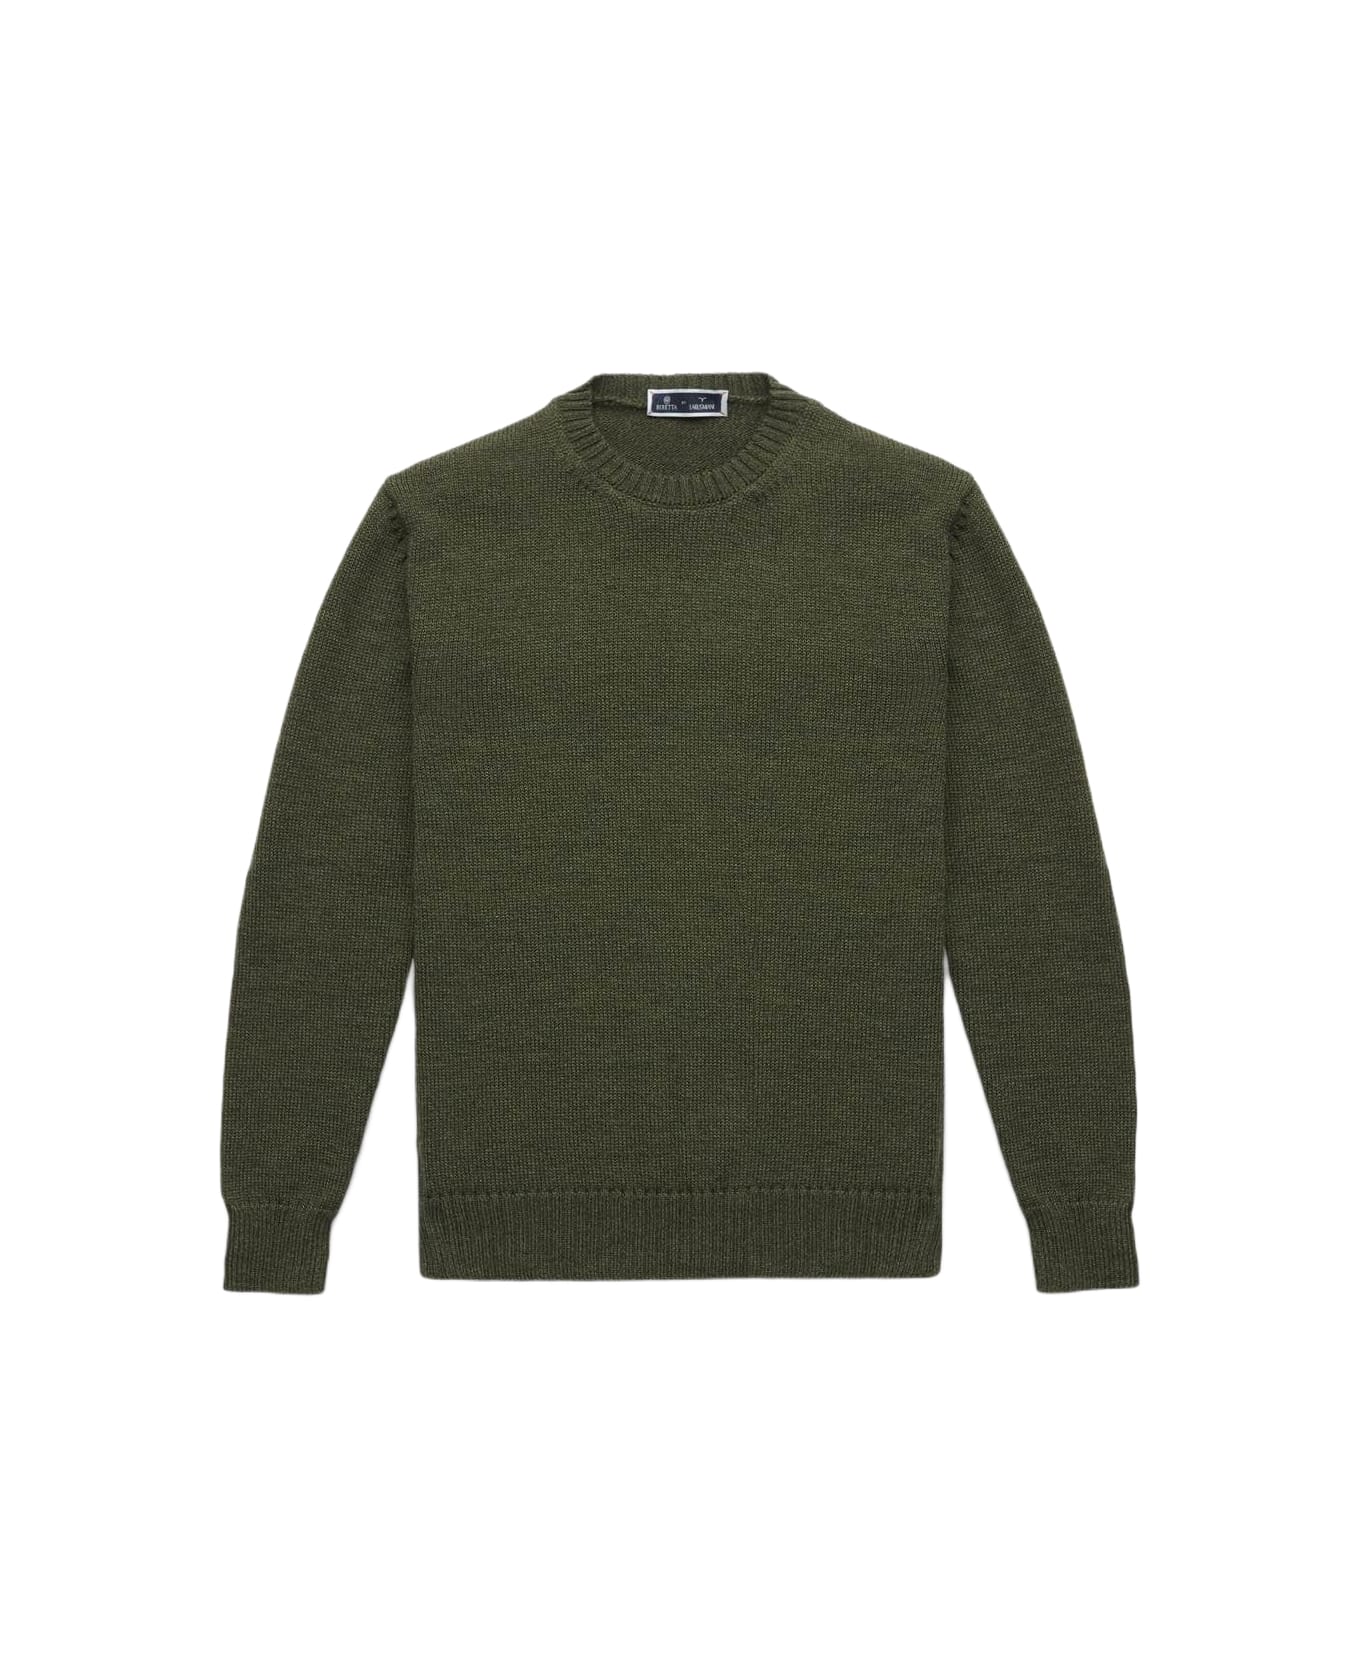 Larusmiani Crew Neck Sweater 'la Cabane' Sweater - Olive